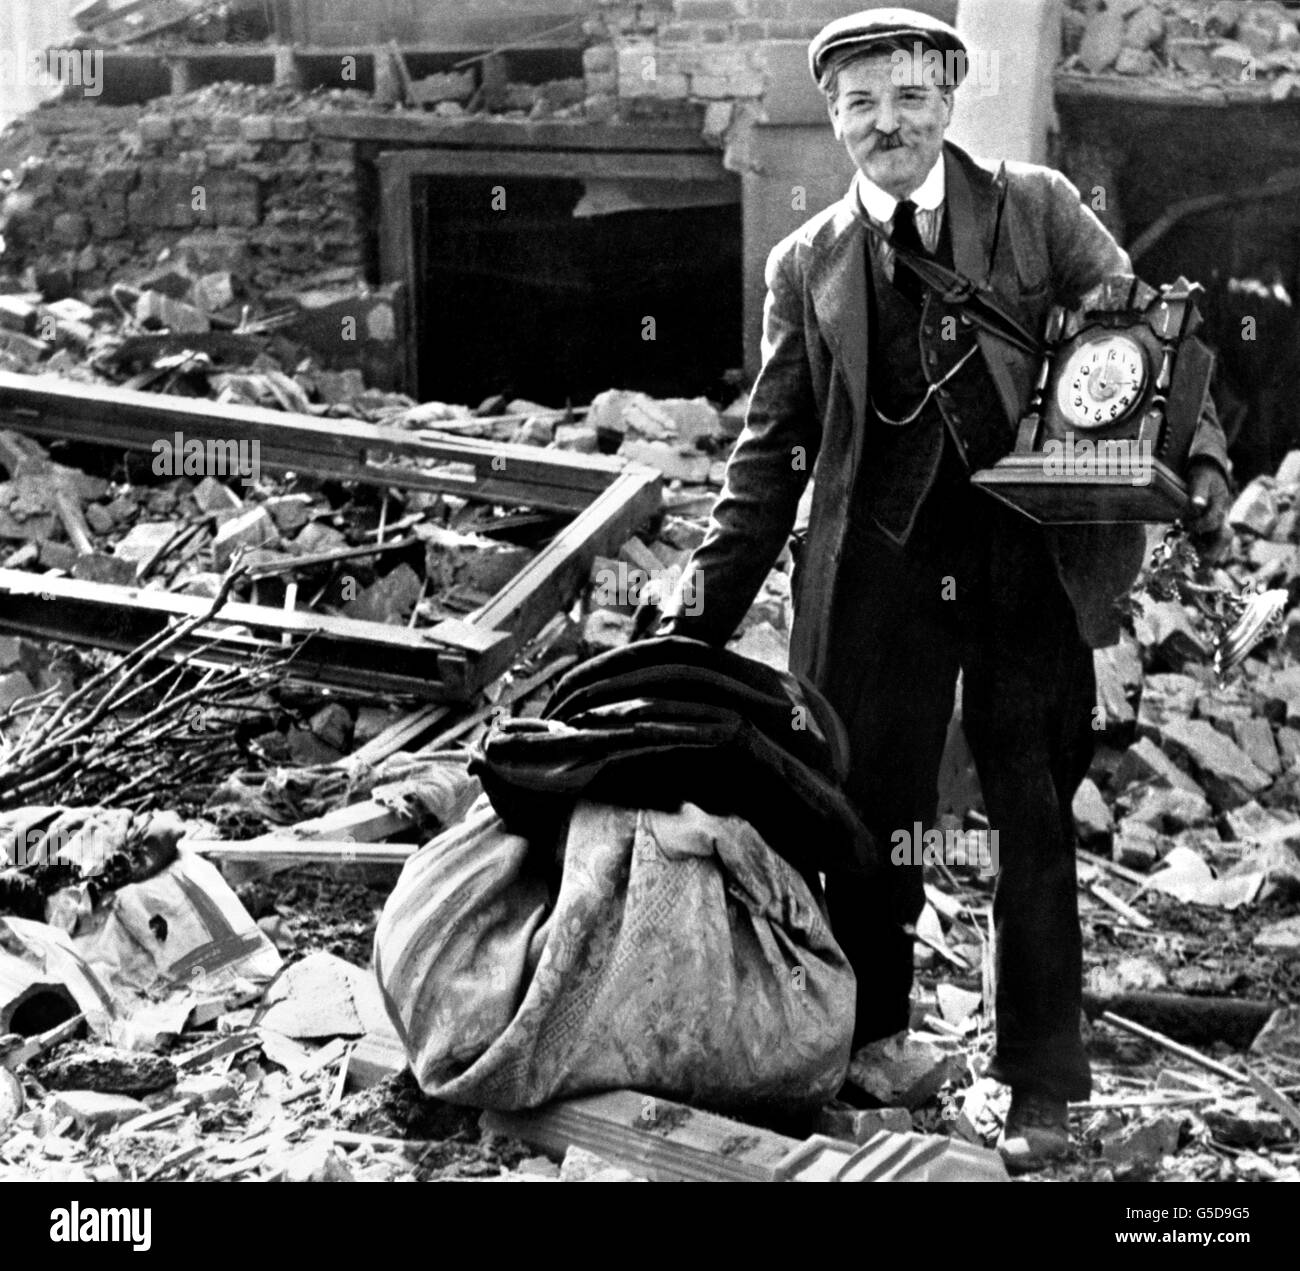 Un londonien, toujours souriant, tout en récupérant les restes de ses biens des décombres de sa maison endommagée par la bombe. Banque D'Images